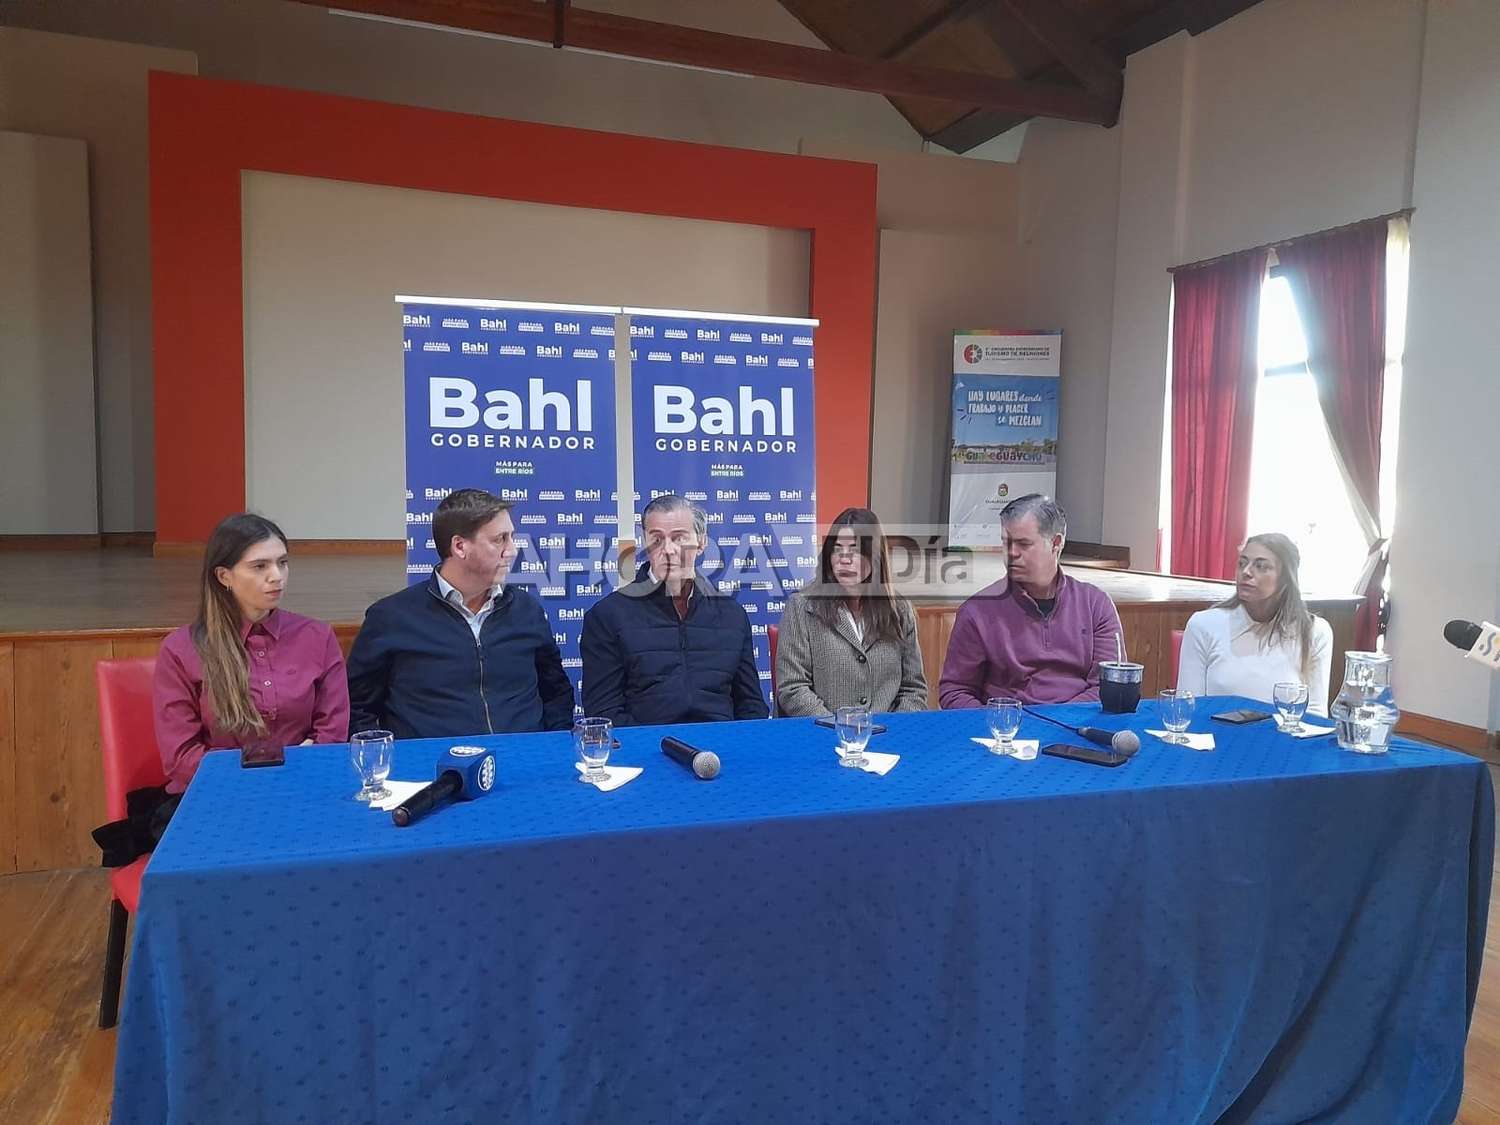 De campaña en Gualeguaychú, Bahl afirmó que “Entre Ríos es una provincia ordenada”